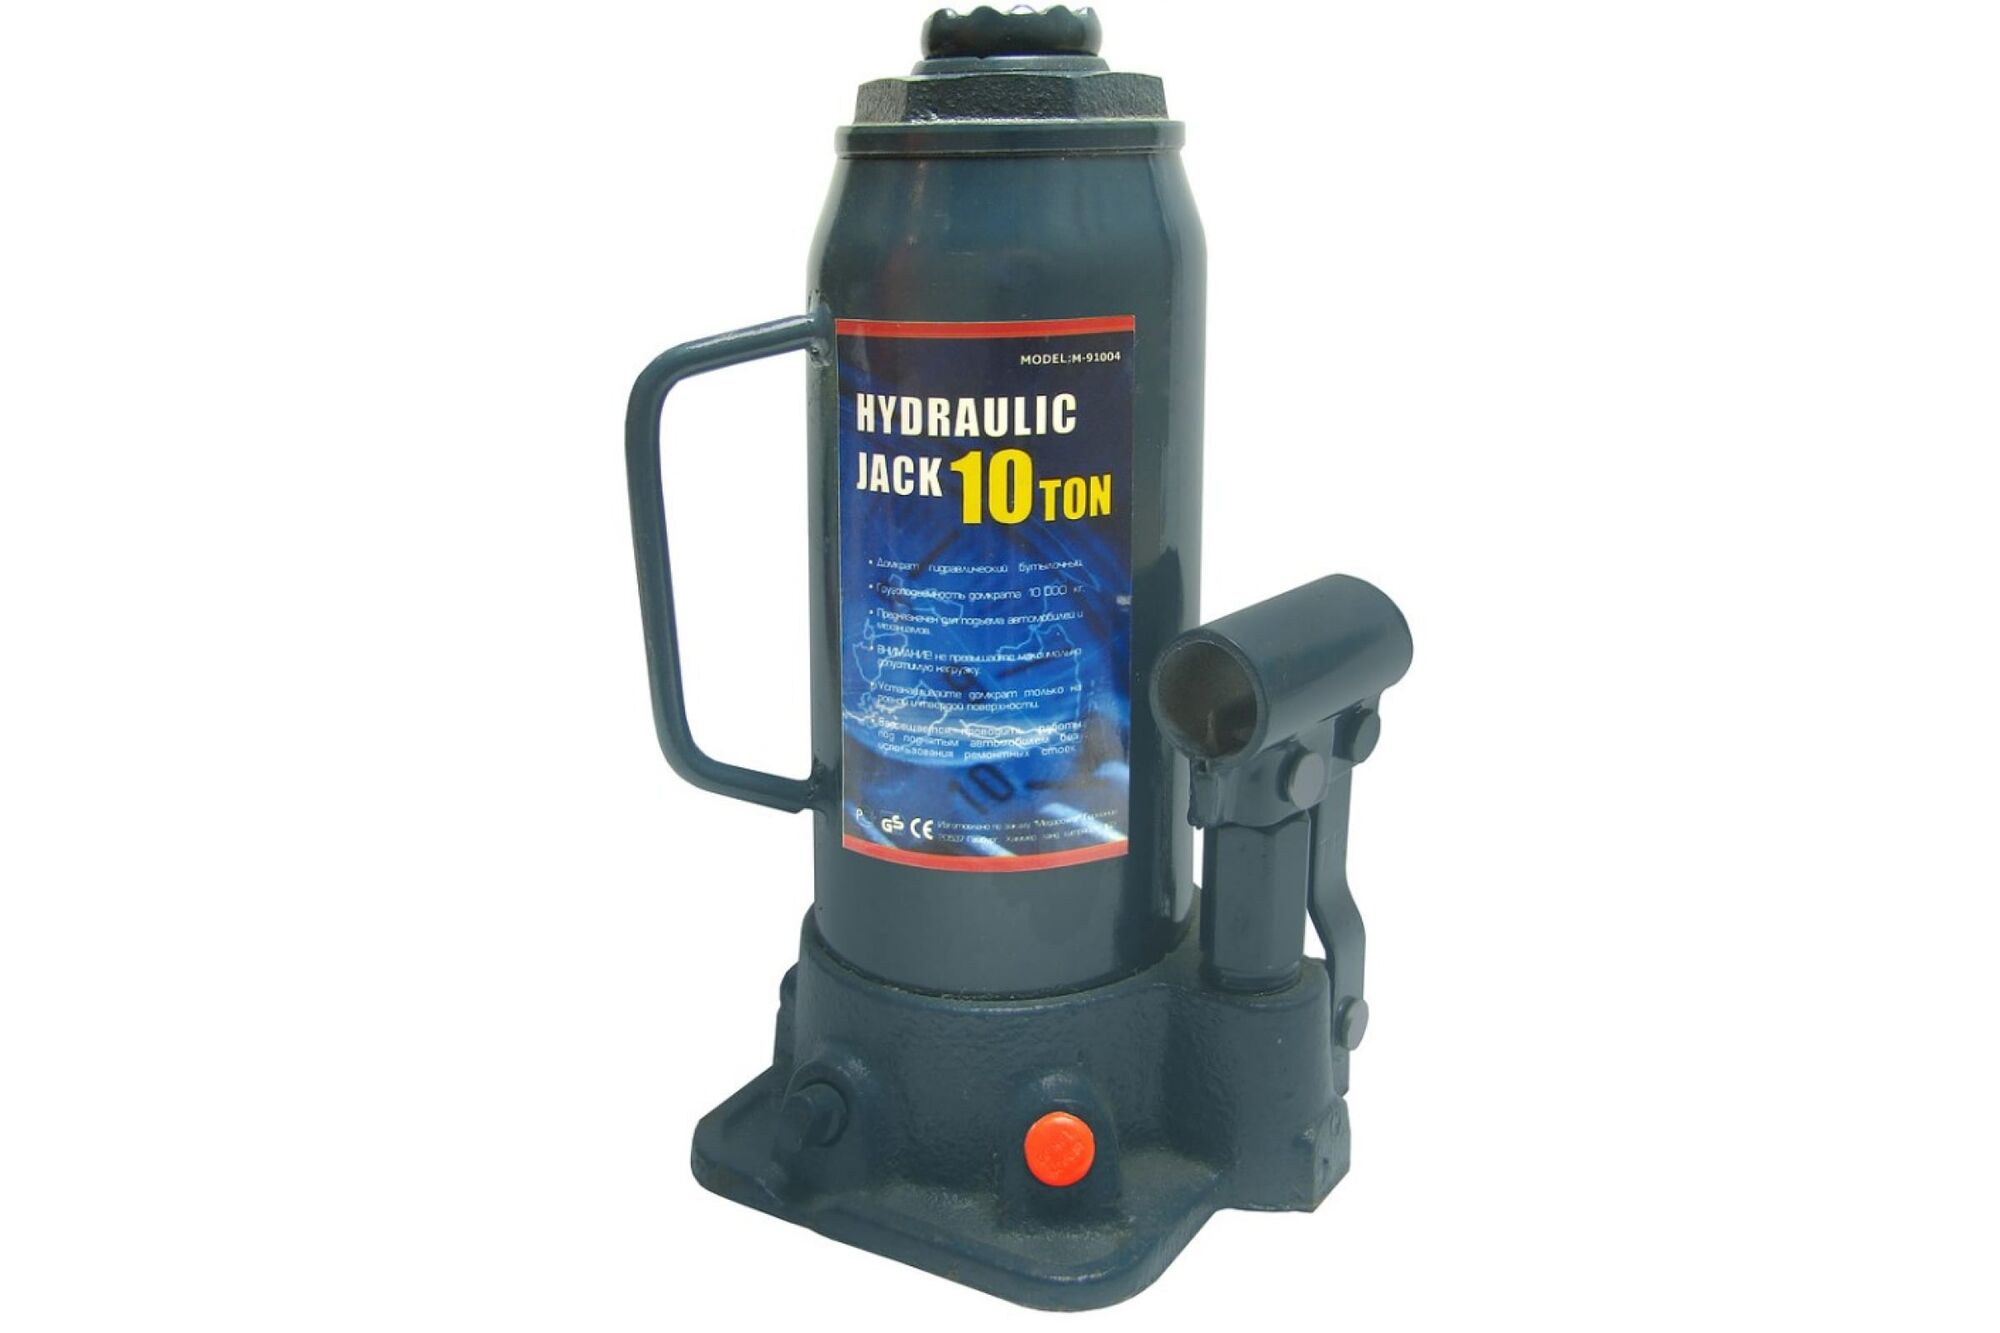 Гидравлический бутылочный домкрат MEGAPOWER M-91004 10 т выс.подъема 230-460мм с клапаном 1 4 T91004